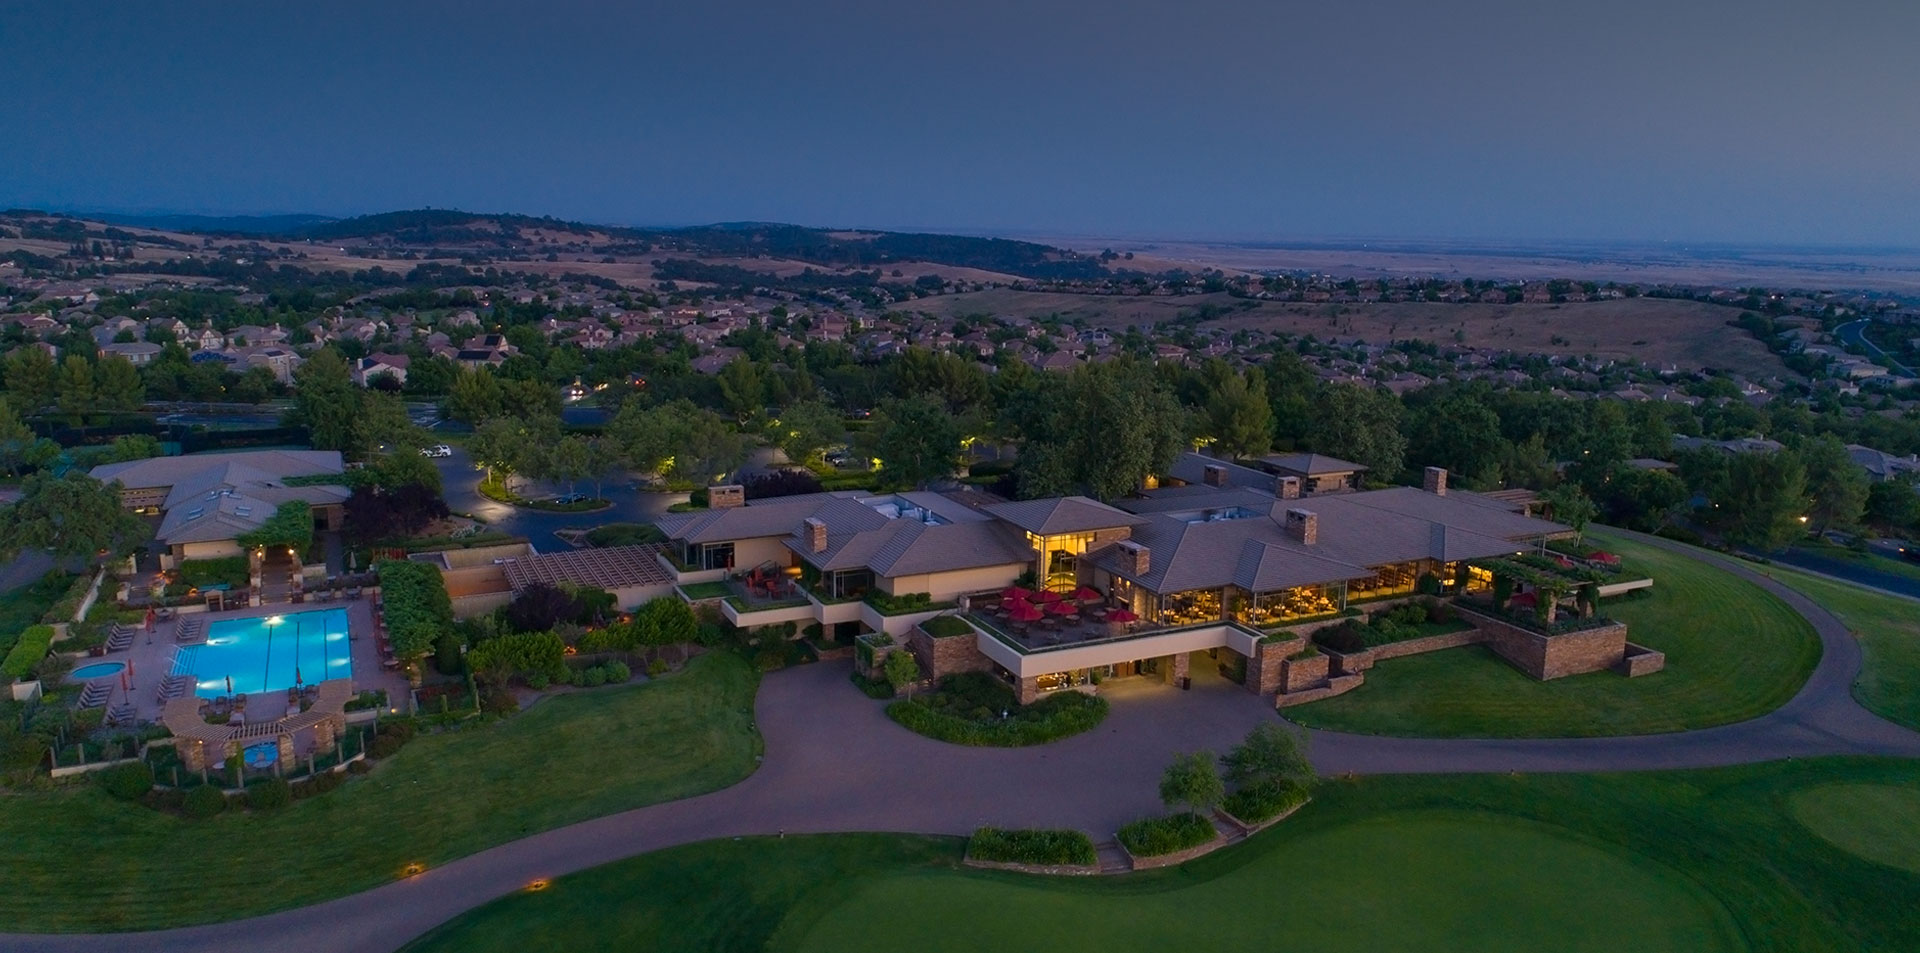 Country Club Sacramento & El Dorado Hills CA | Serrano Country Club -  Serrano Country Club